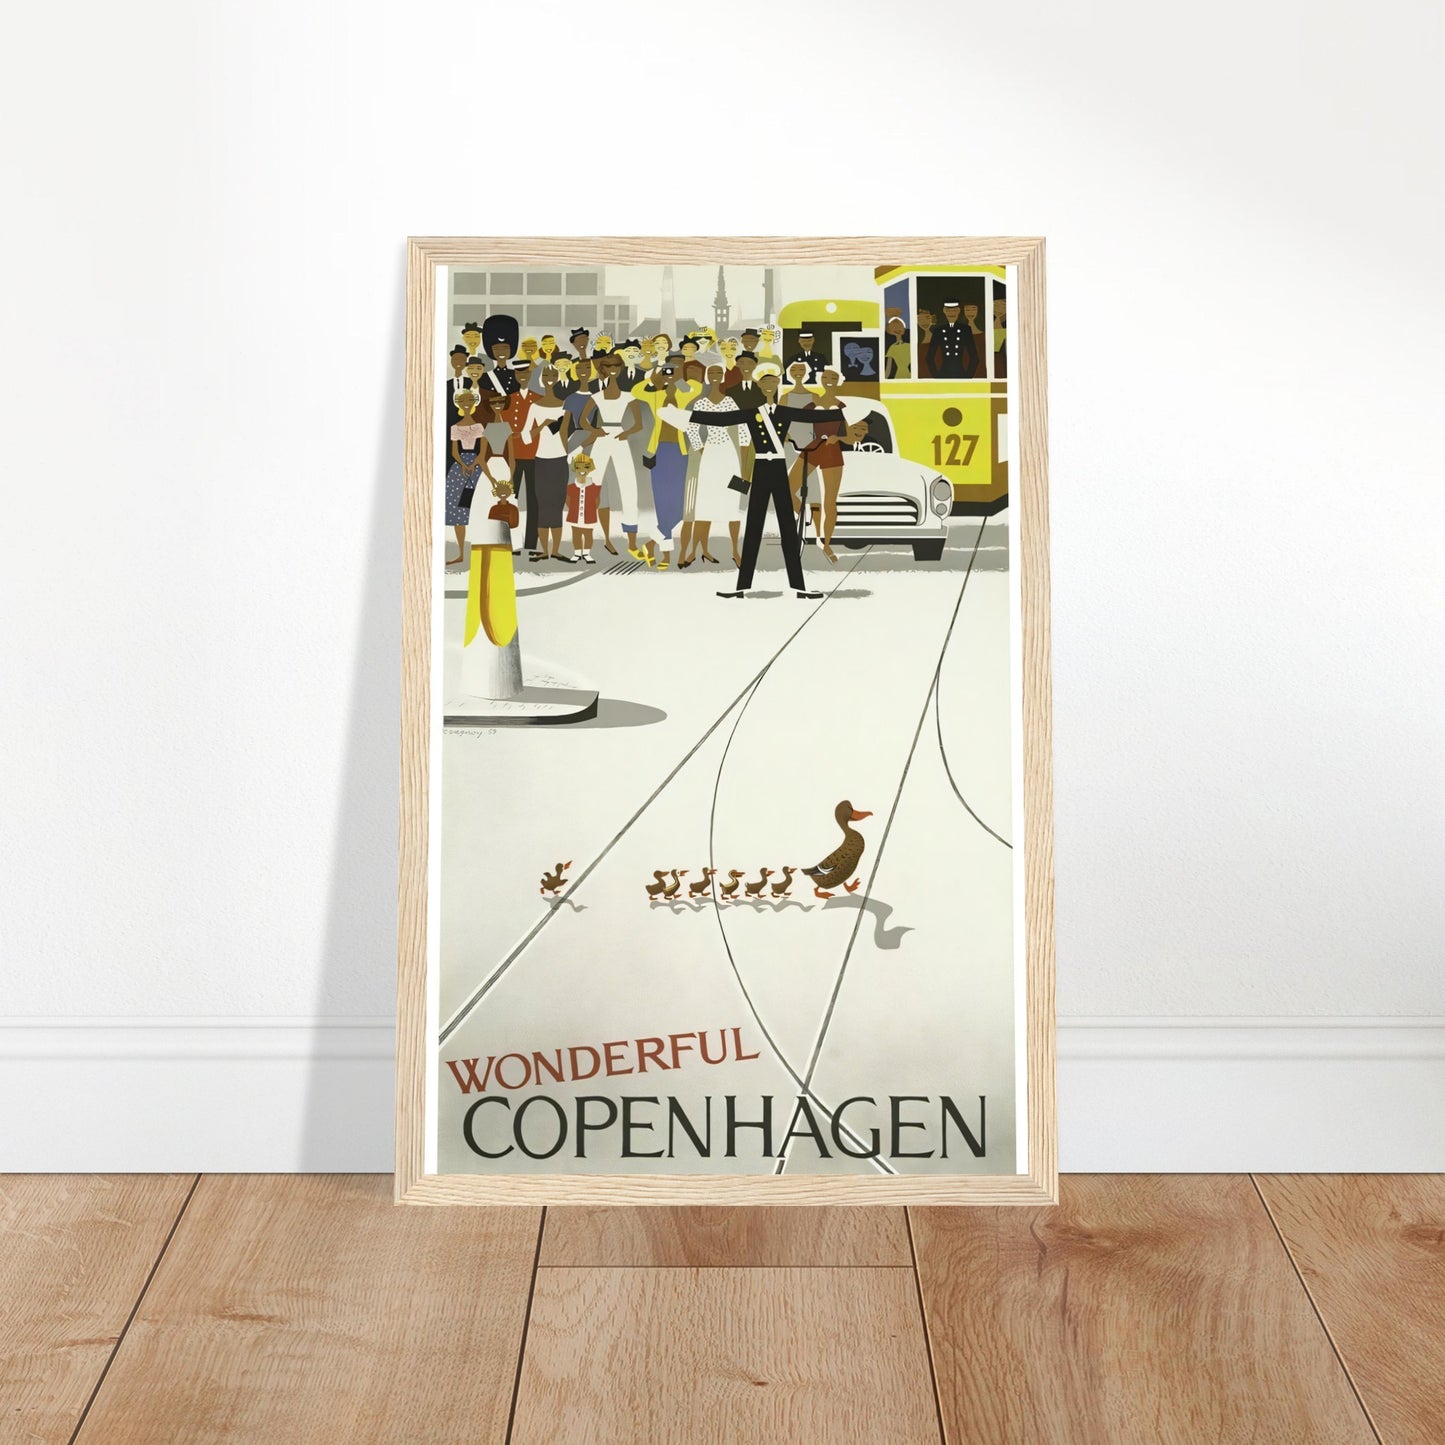 Copenhagen Vintage Poster Reprint on Premium Matte Paper - Posterify